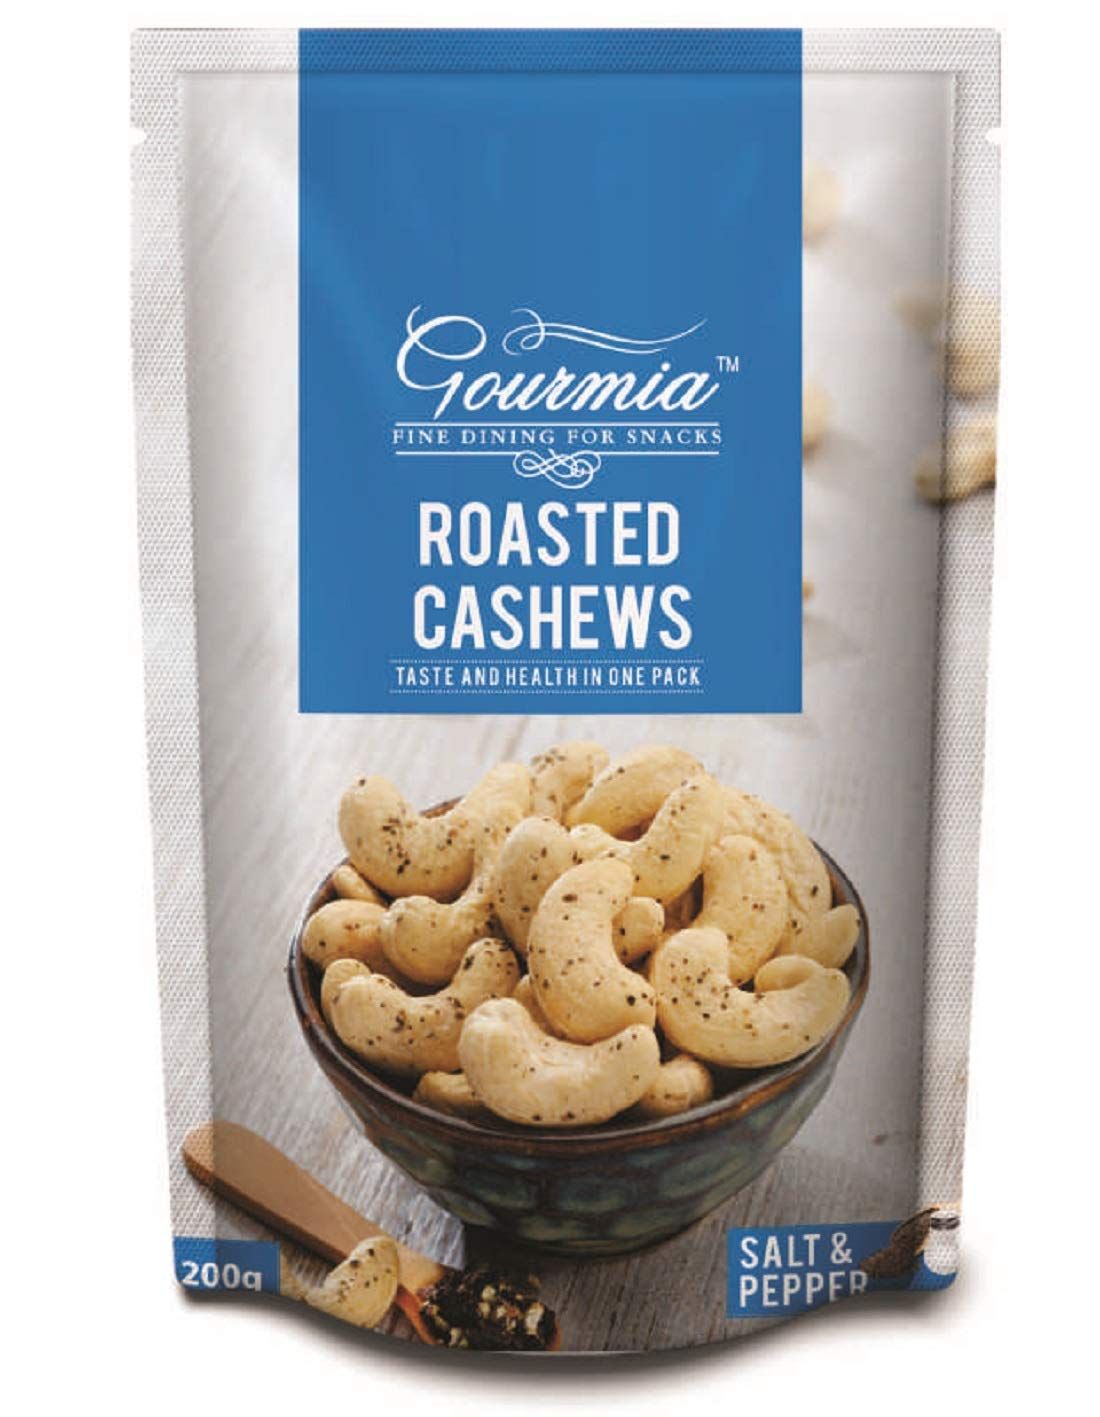 Gourmia Roasted Cashews Image